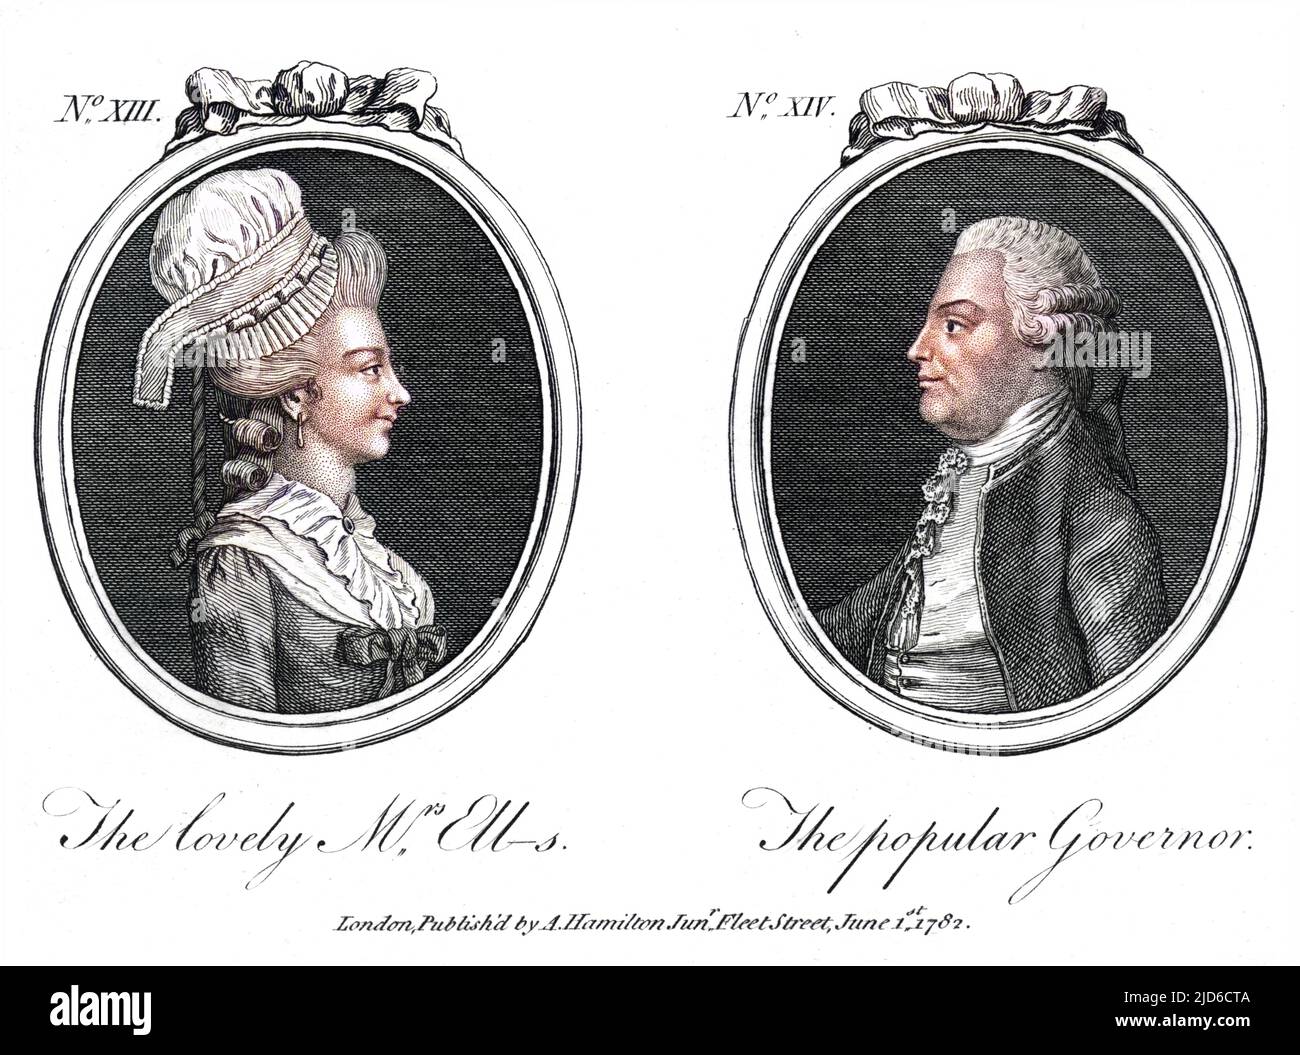 WILLIAM HENRY CAVENDISH BENTINCK dritter Herzog von PORTLAND Staatsmann, dargestellt in Verbindung mit der schönen Frau Ellis... Kolorierte Version von : 10172943 Datum: 1738 - 1809 Stockfoto